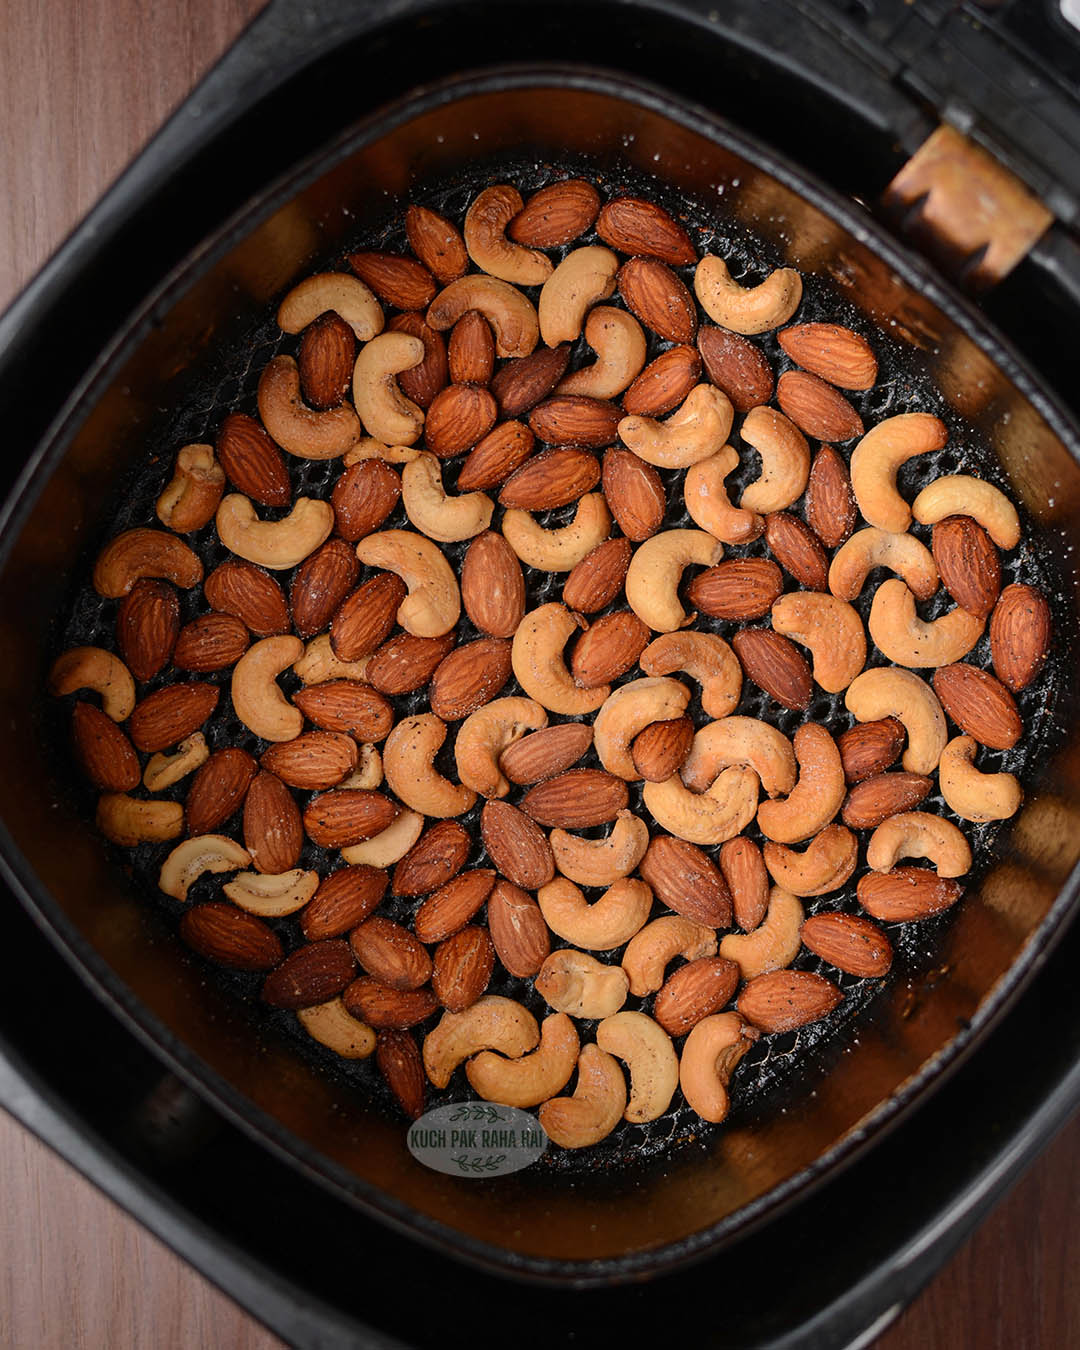 Roasted nuts in air fryer.